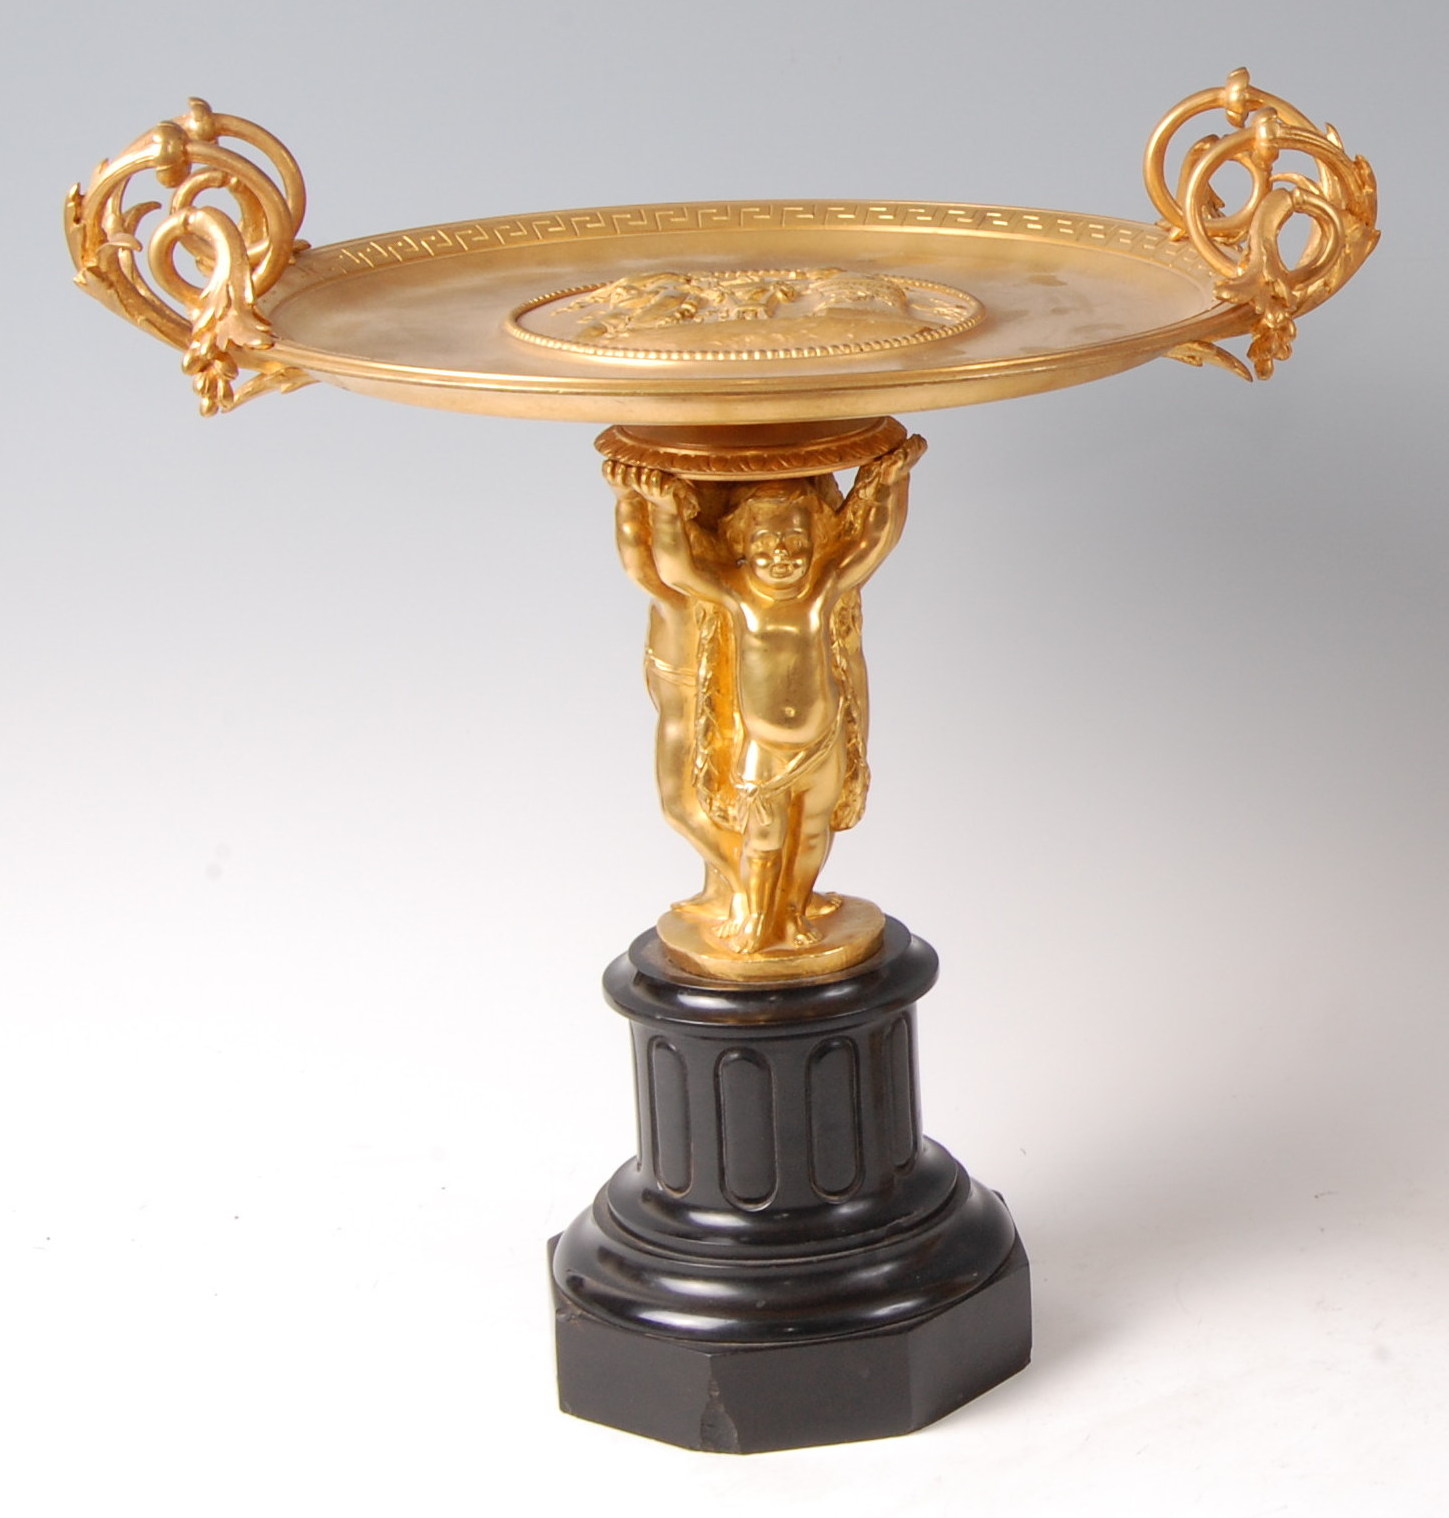 A circa 1900 French gilt bronze figural tazza,